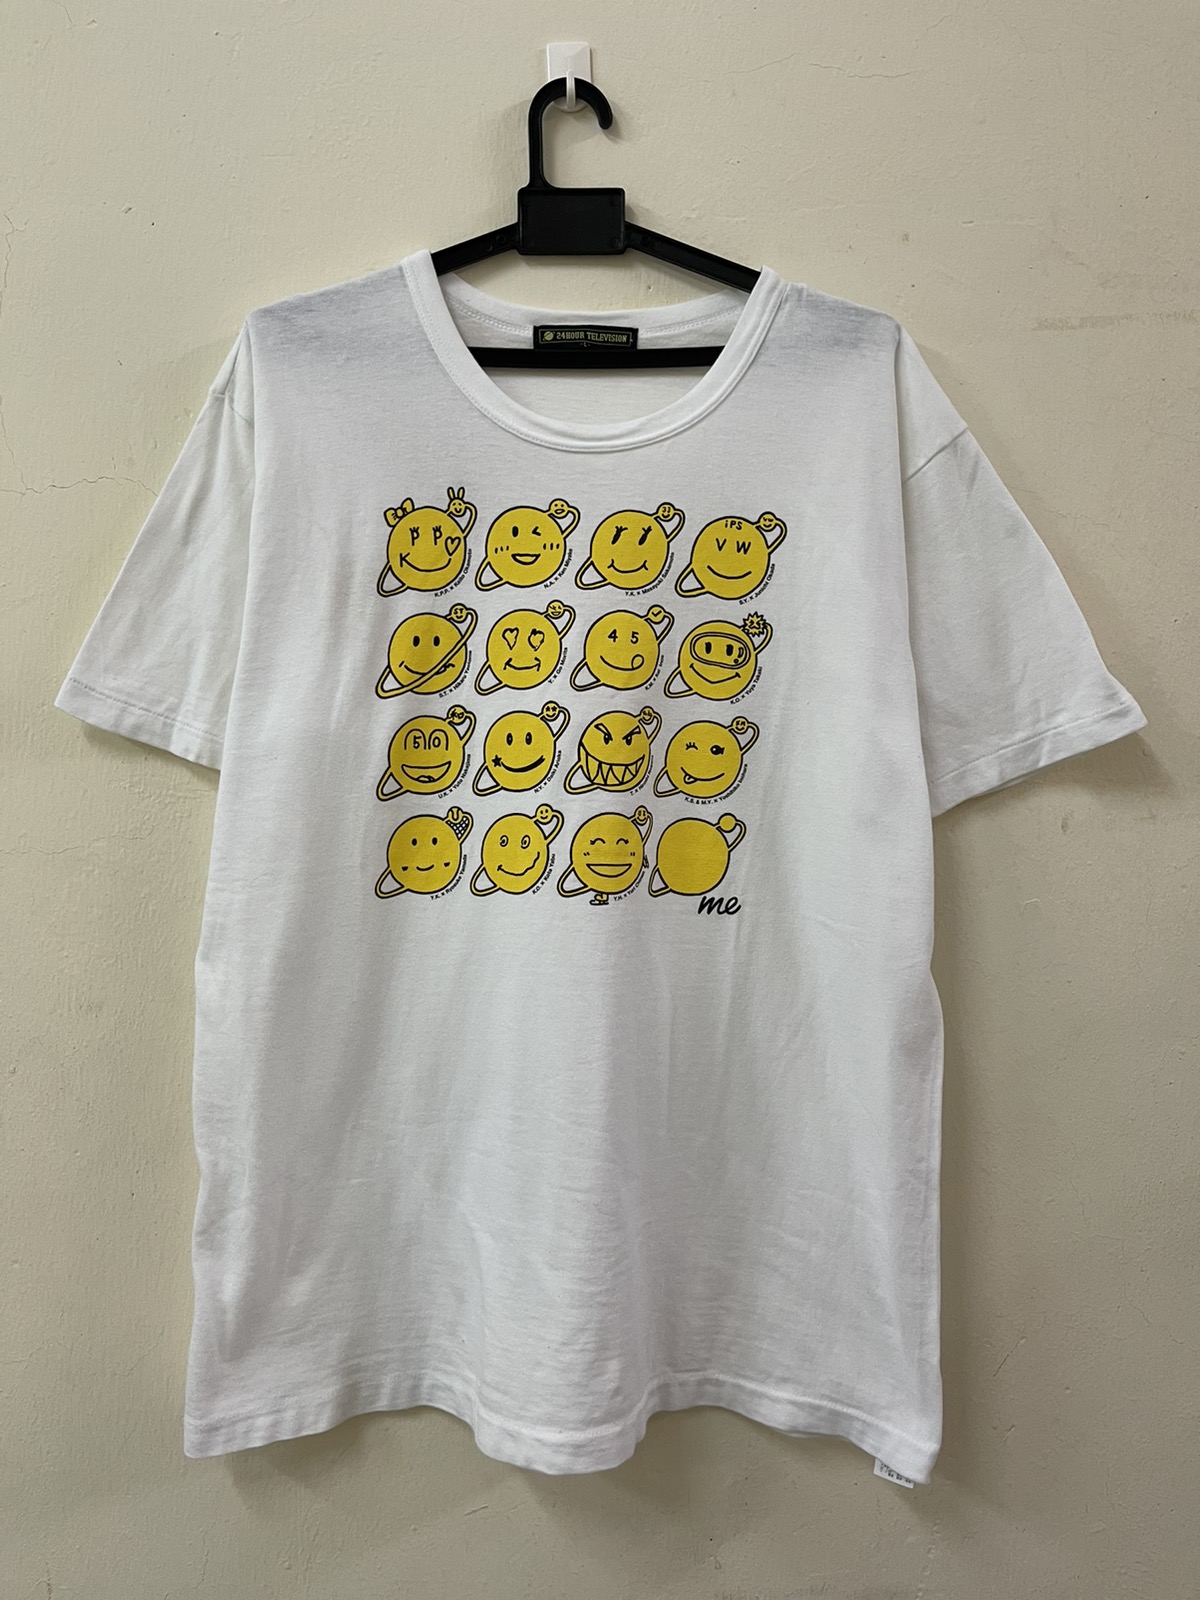 Vintage - Vintage Takashi Murakami x 24 Hour Television T-shirt - 1